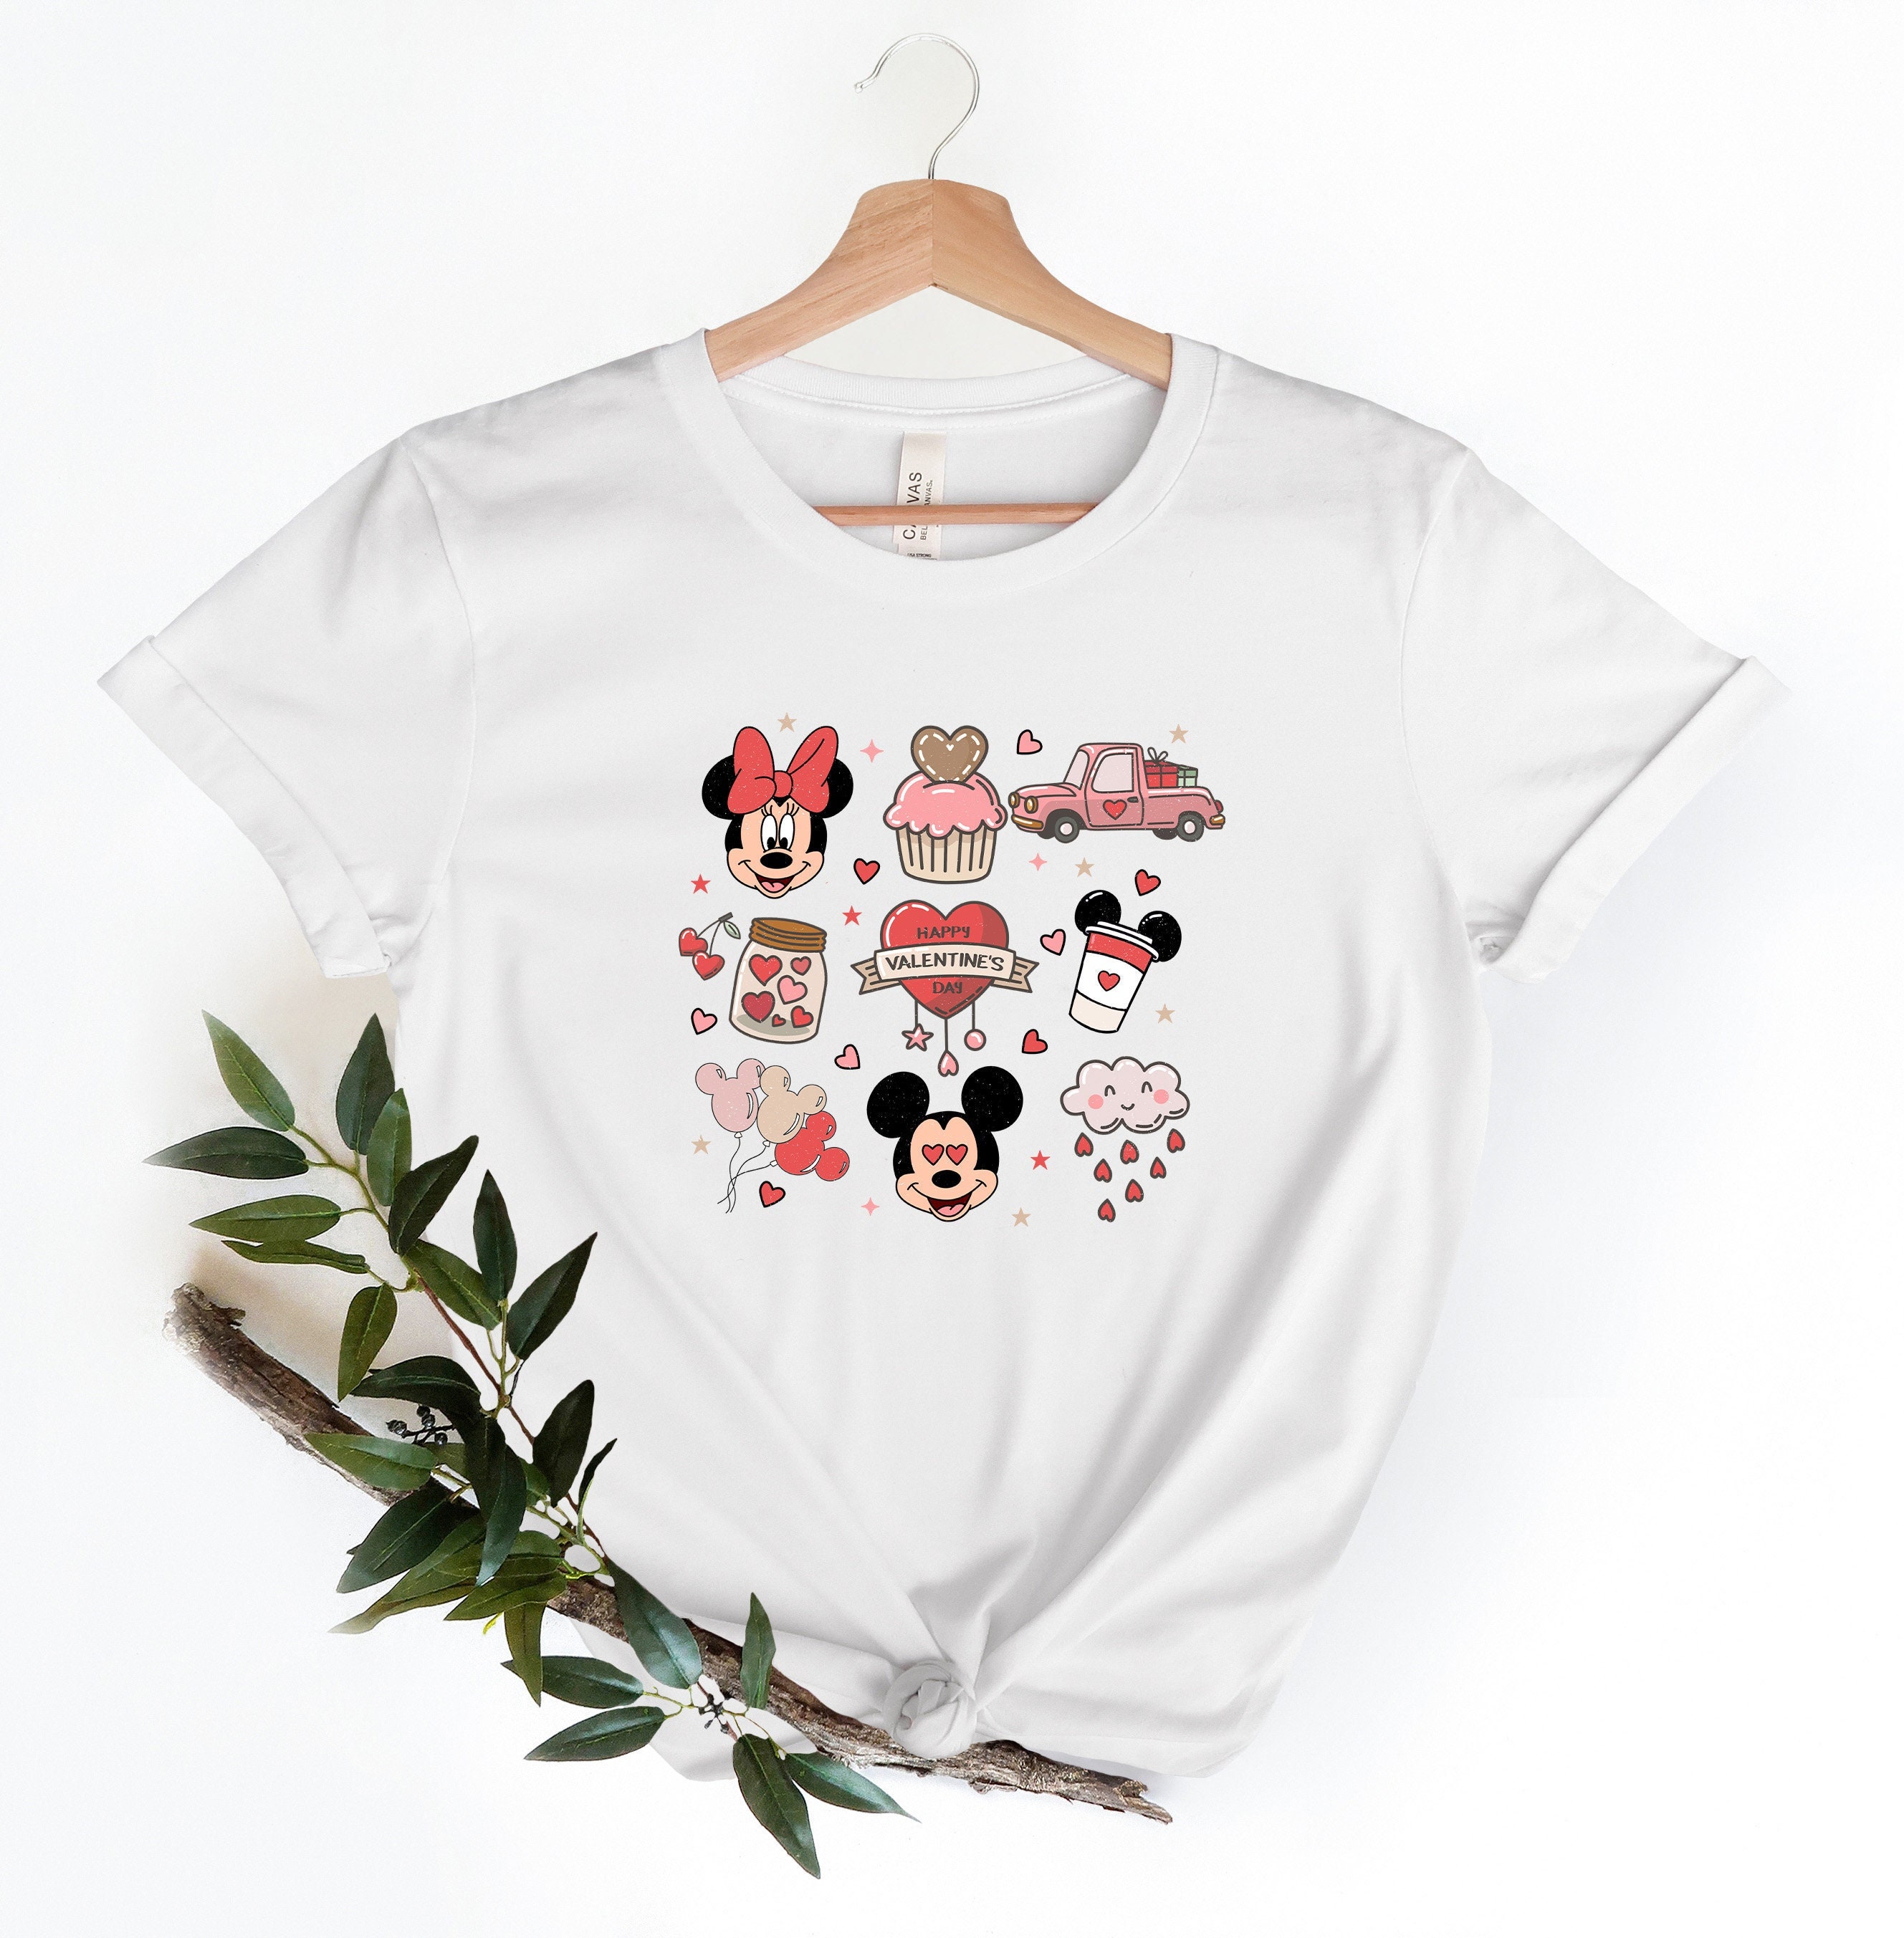 Discover Camiseta Disney Día de San Valentín Lindo Divertido Vintage para Hombre Mujer